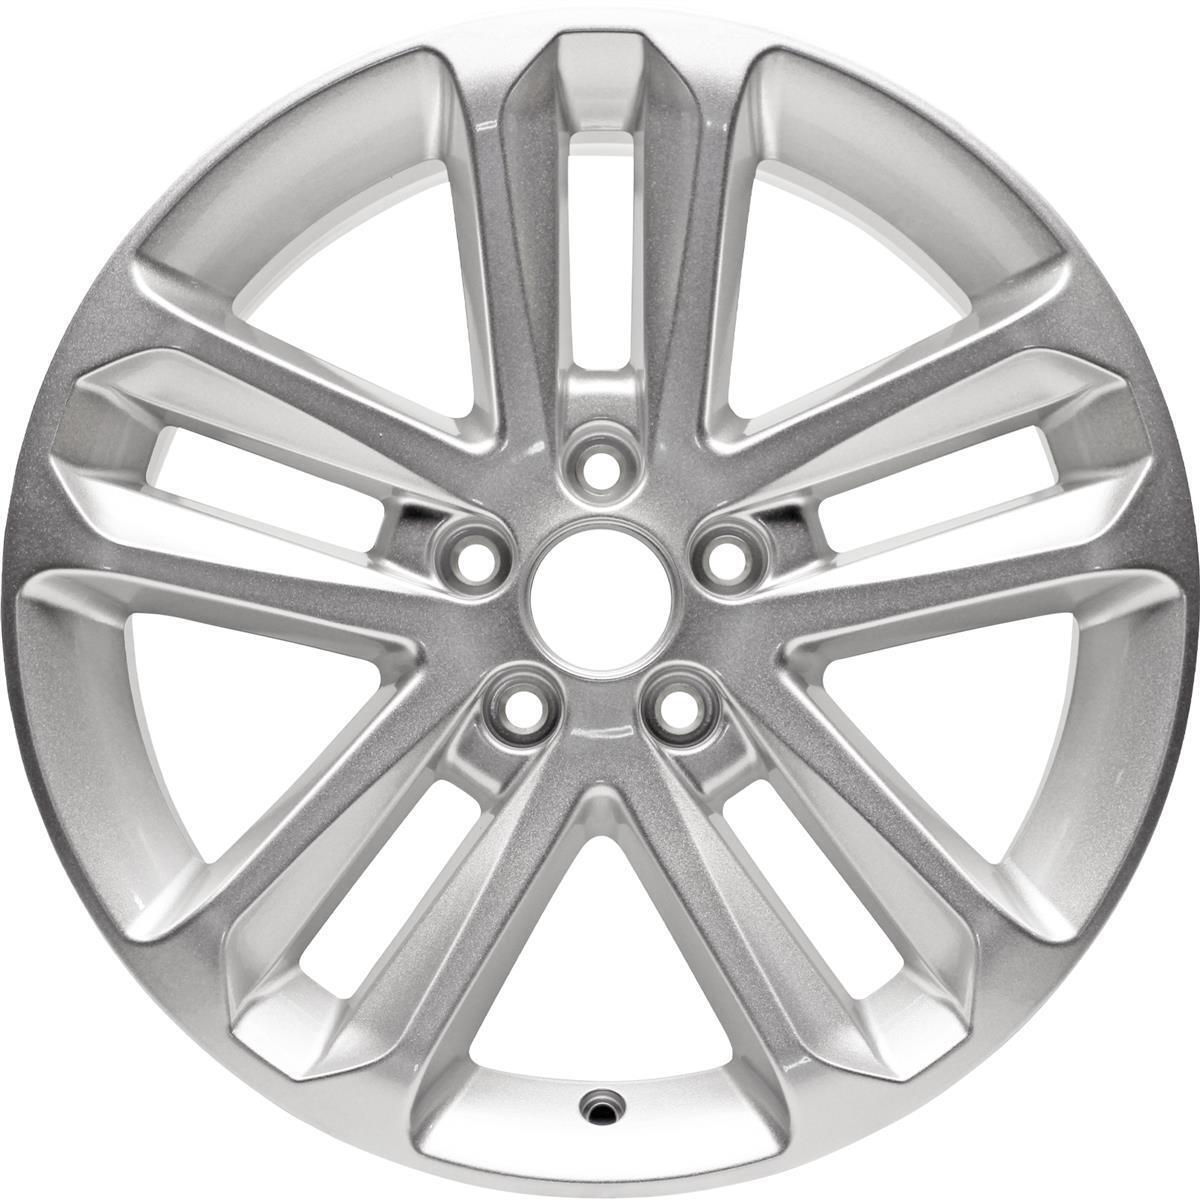 Aluminum Alloy Wheel Rim 18 Inch 2011-2017 Ford Explorer 5-114.3mm 10 Spoke